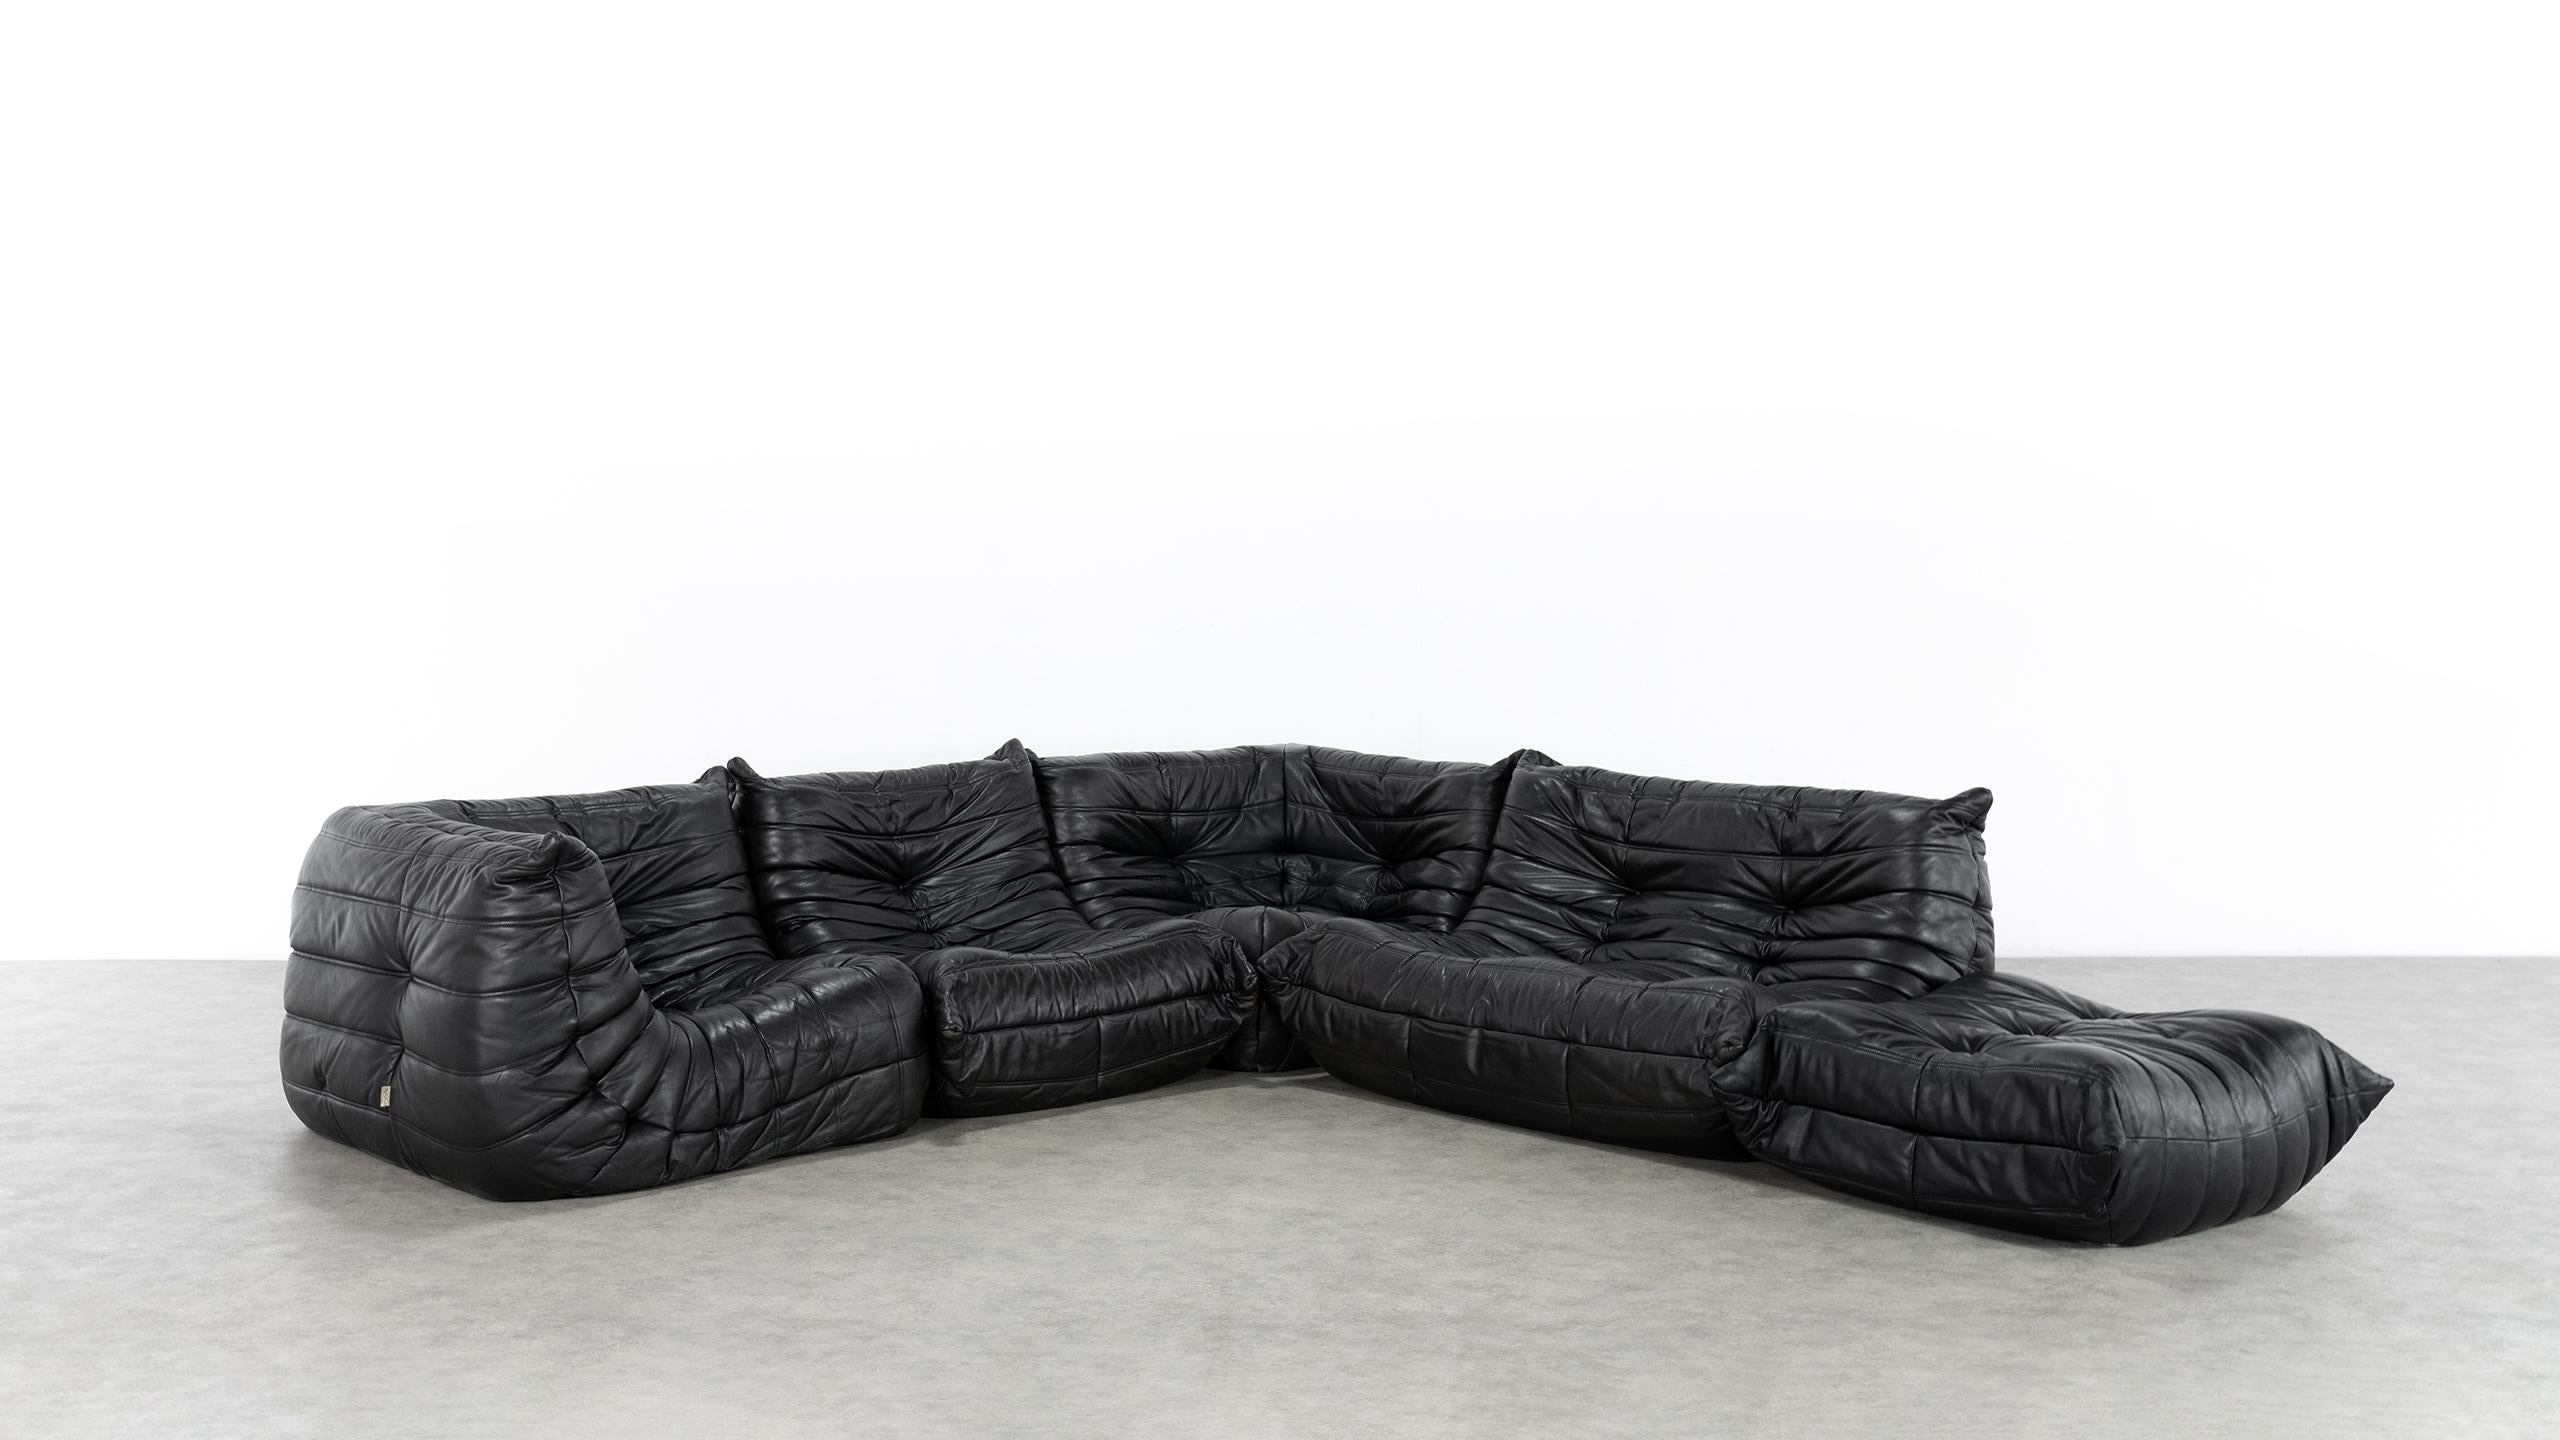 Togo Sofa, 1974 by Michel Ducaroy + Ligne Roset, Giant Landscape, Black Leather 12